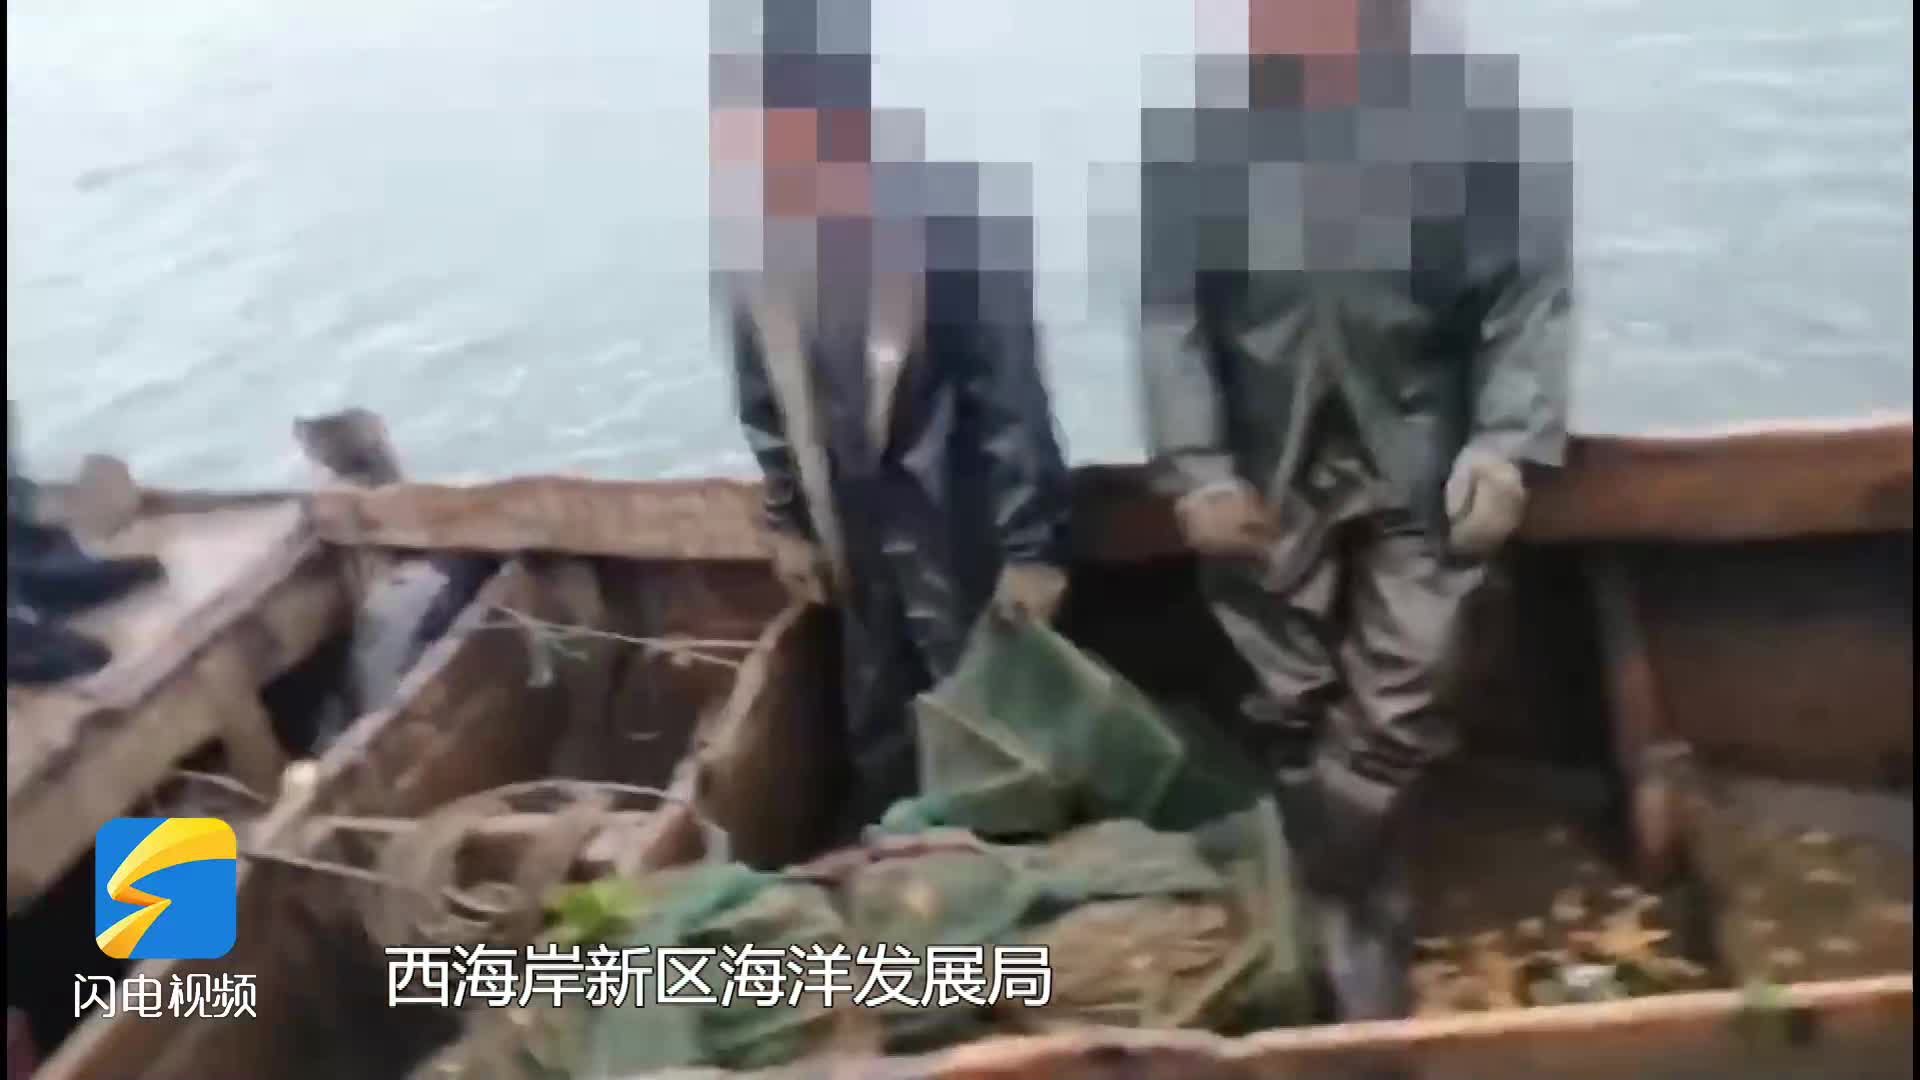 “禁渔期在禁渔区内使用禁用渔具”进行捕捞 两男子非法捕捞被警方当场抓获